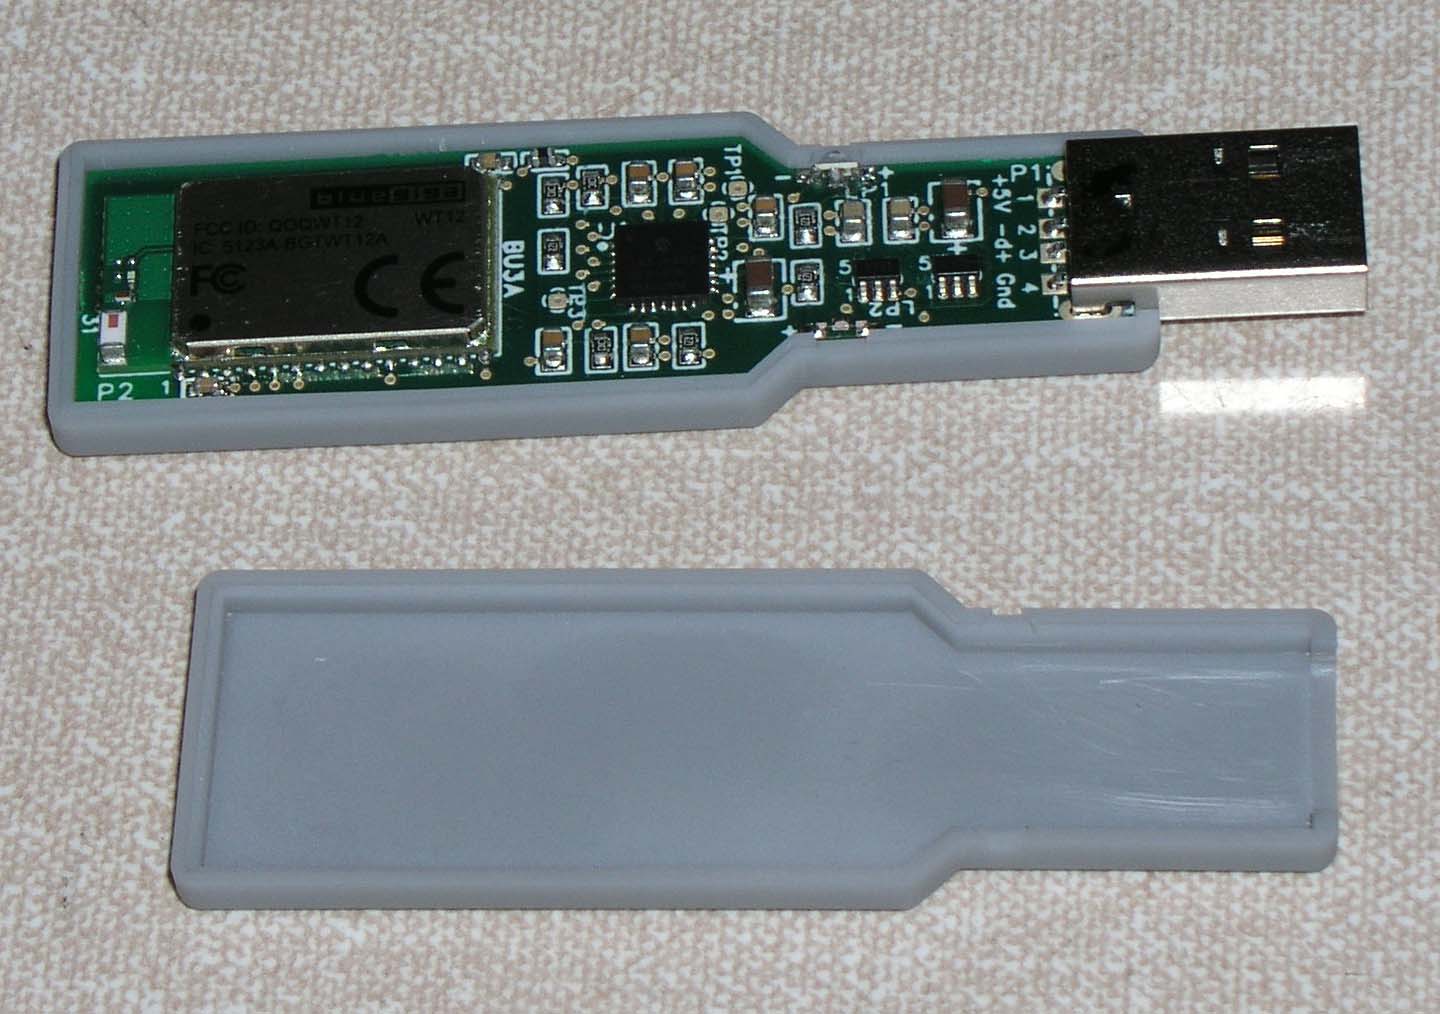 USB BLUETOOTH VIRTUAL PRINTER